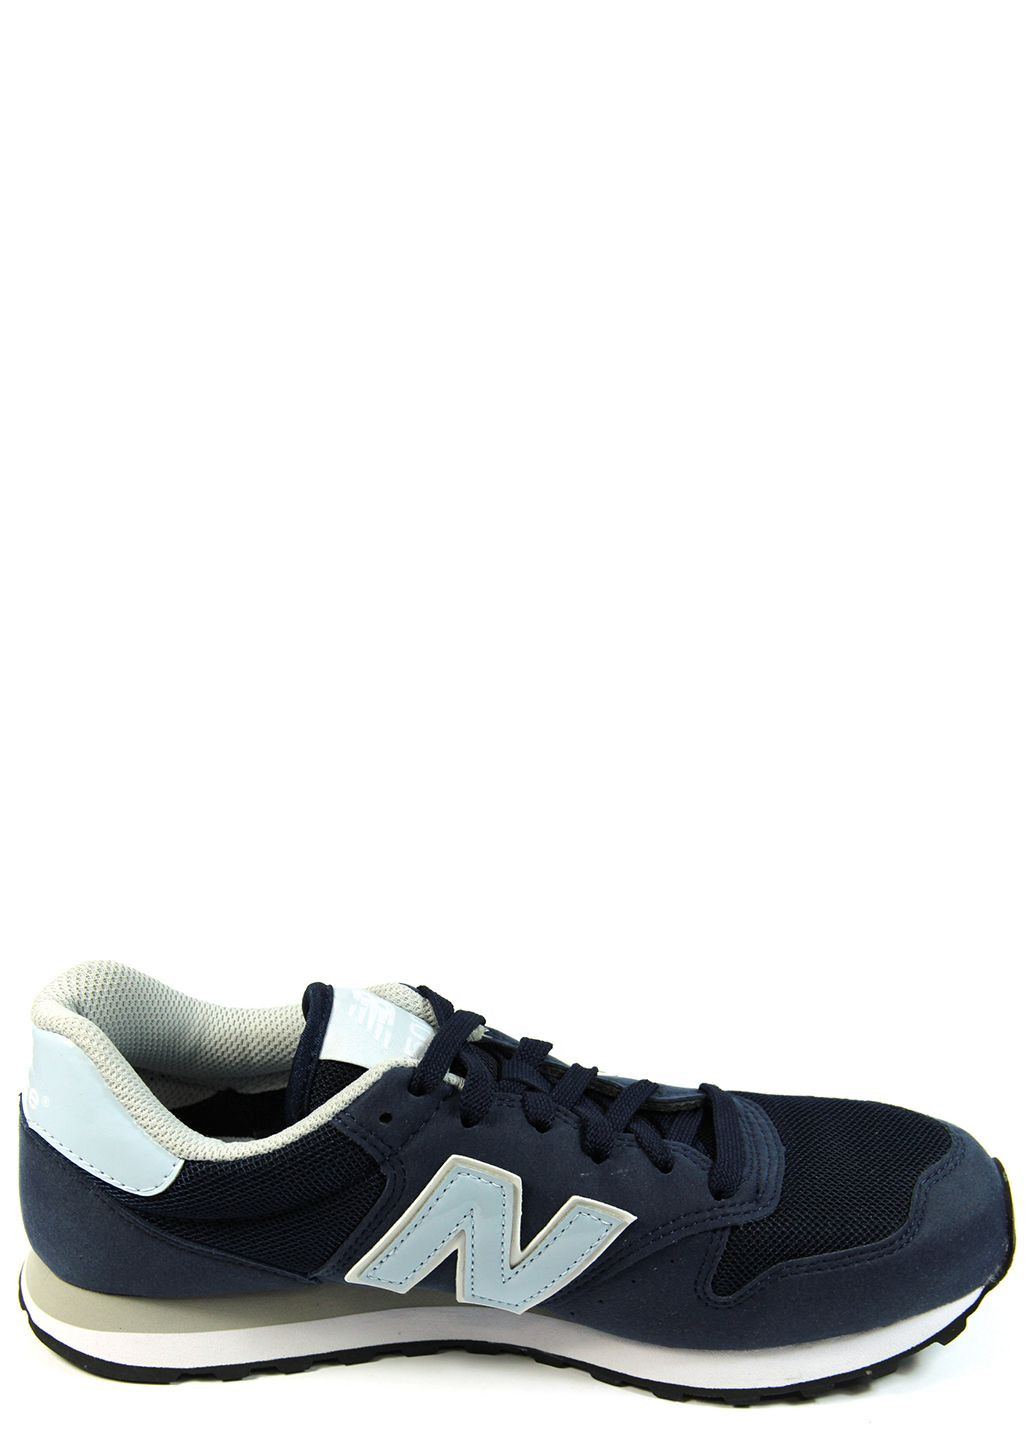 Синие демисезонные женские кроссовки 500 gw500pt New Balance